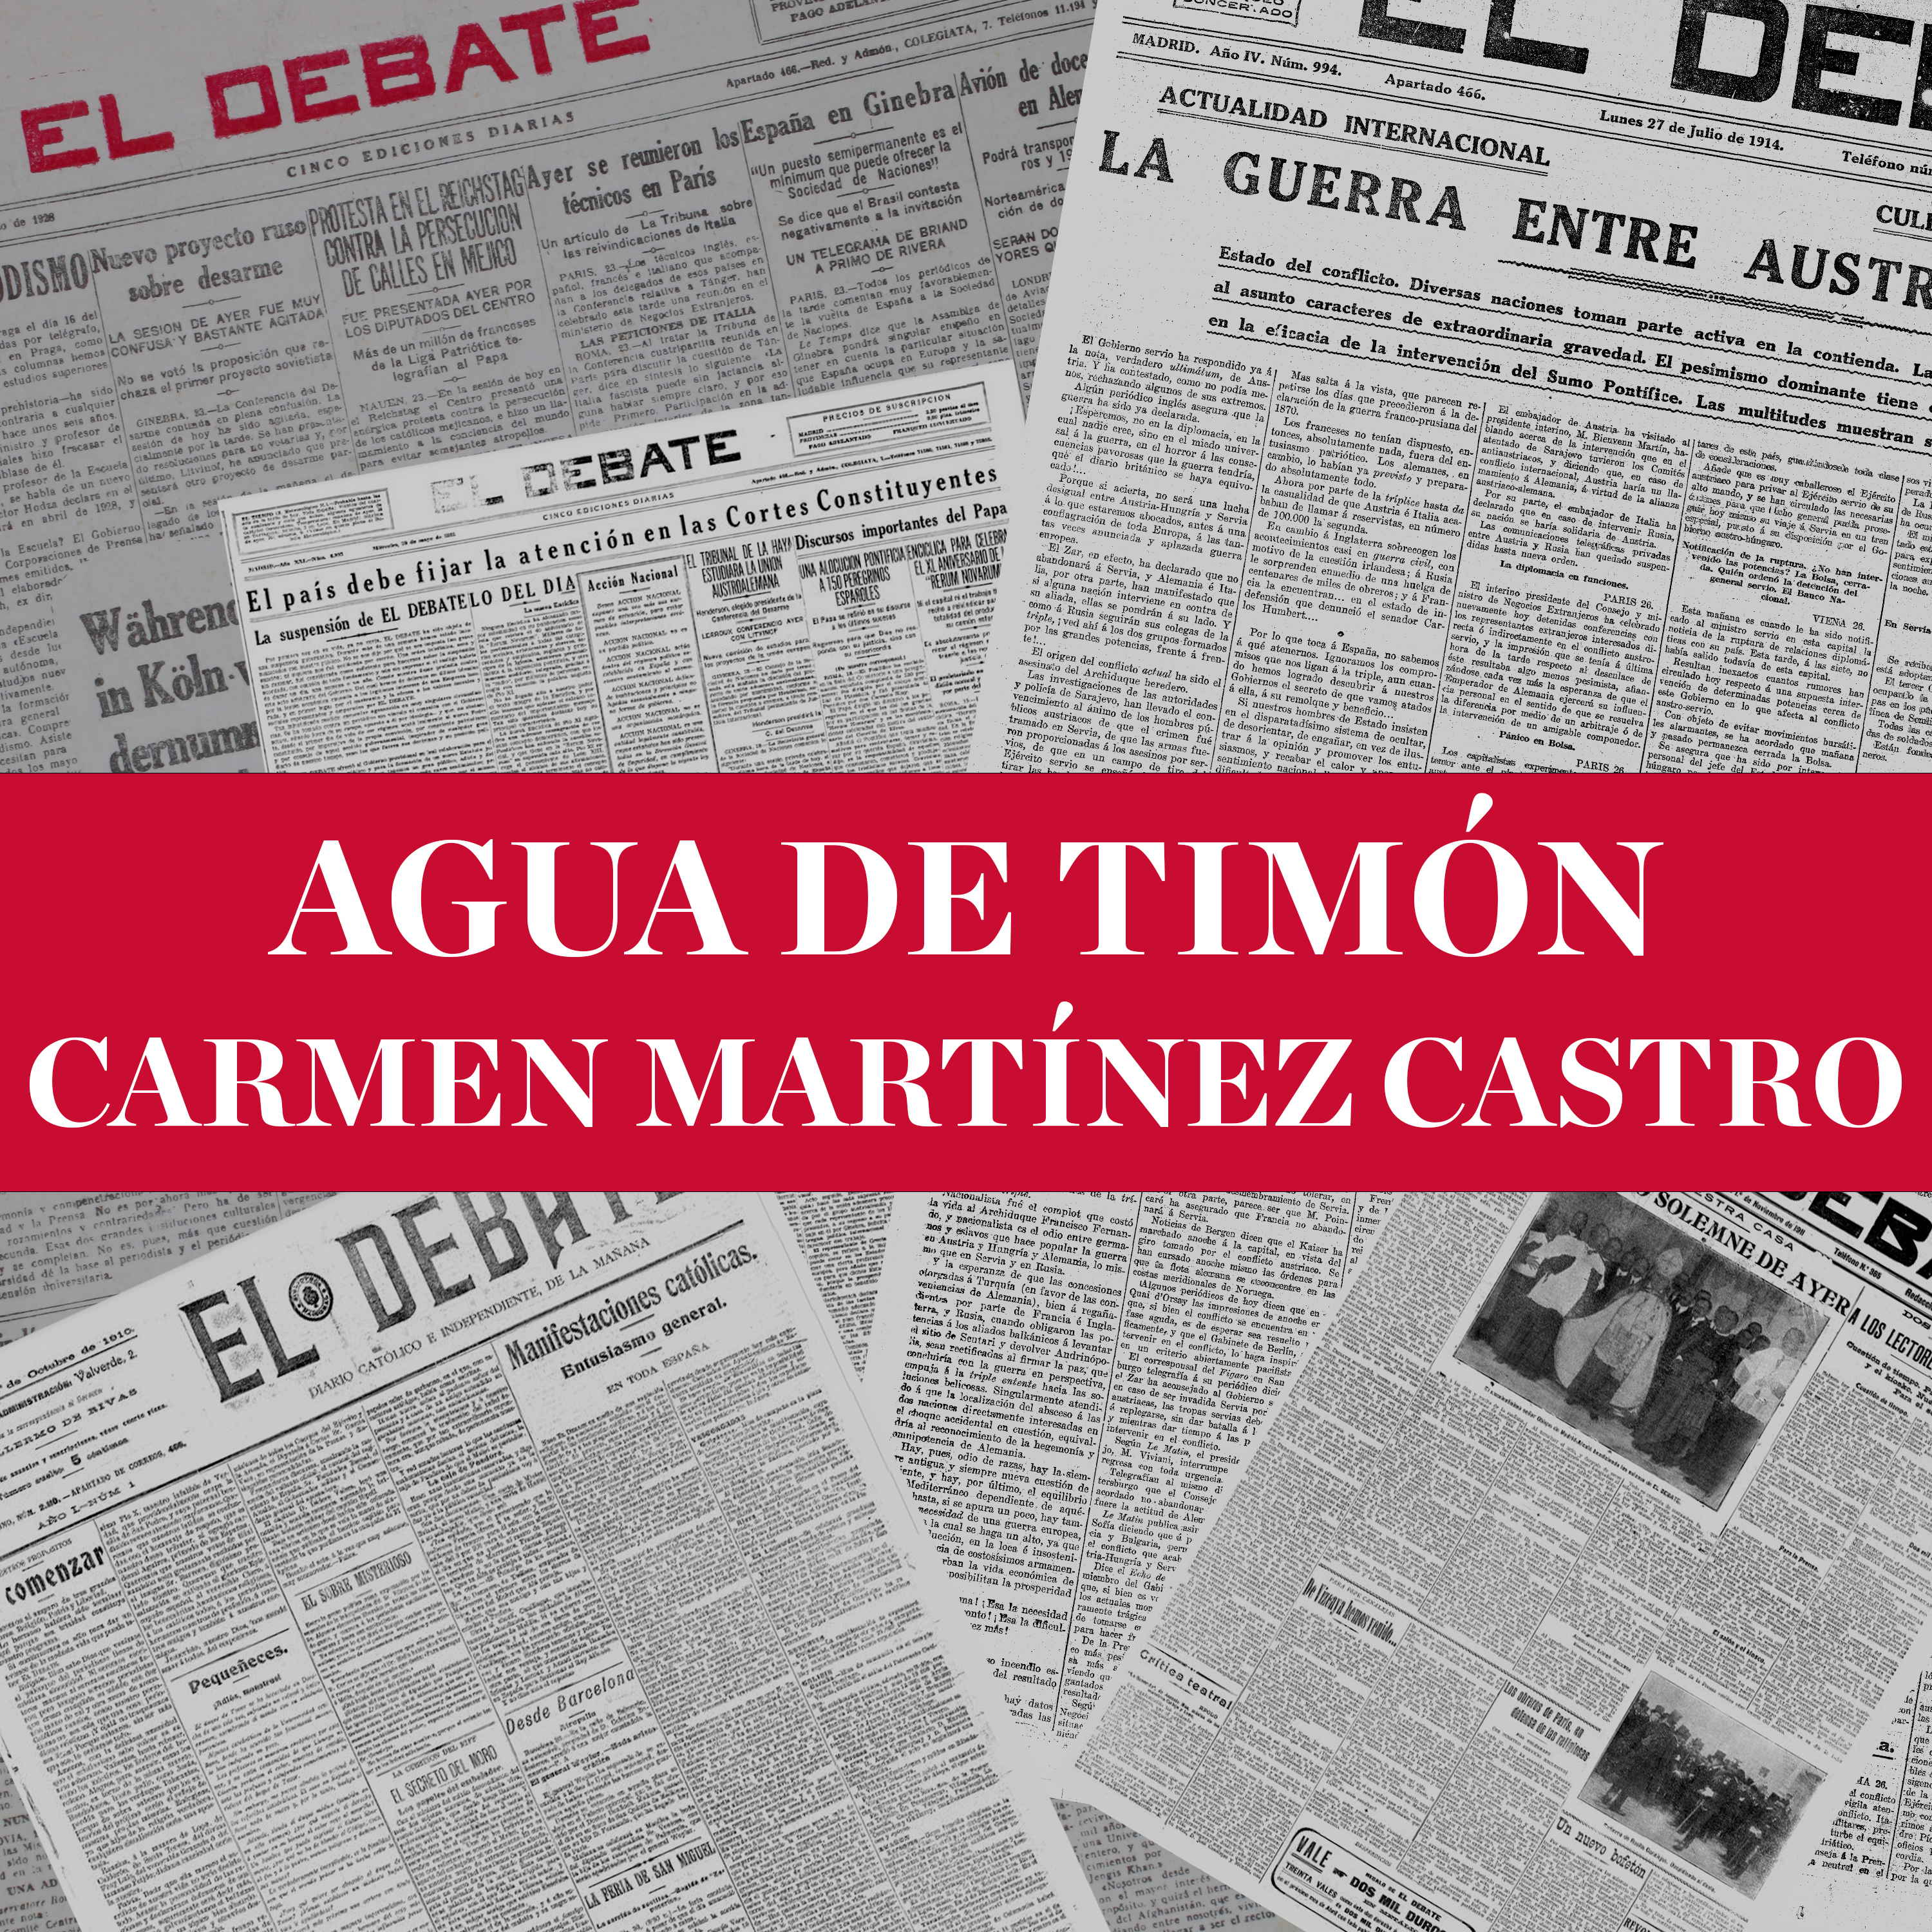 Agua de timón - Carmen Martínez Castro (04/09/22)